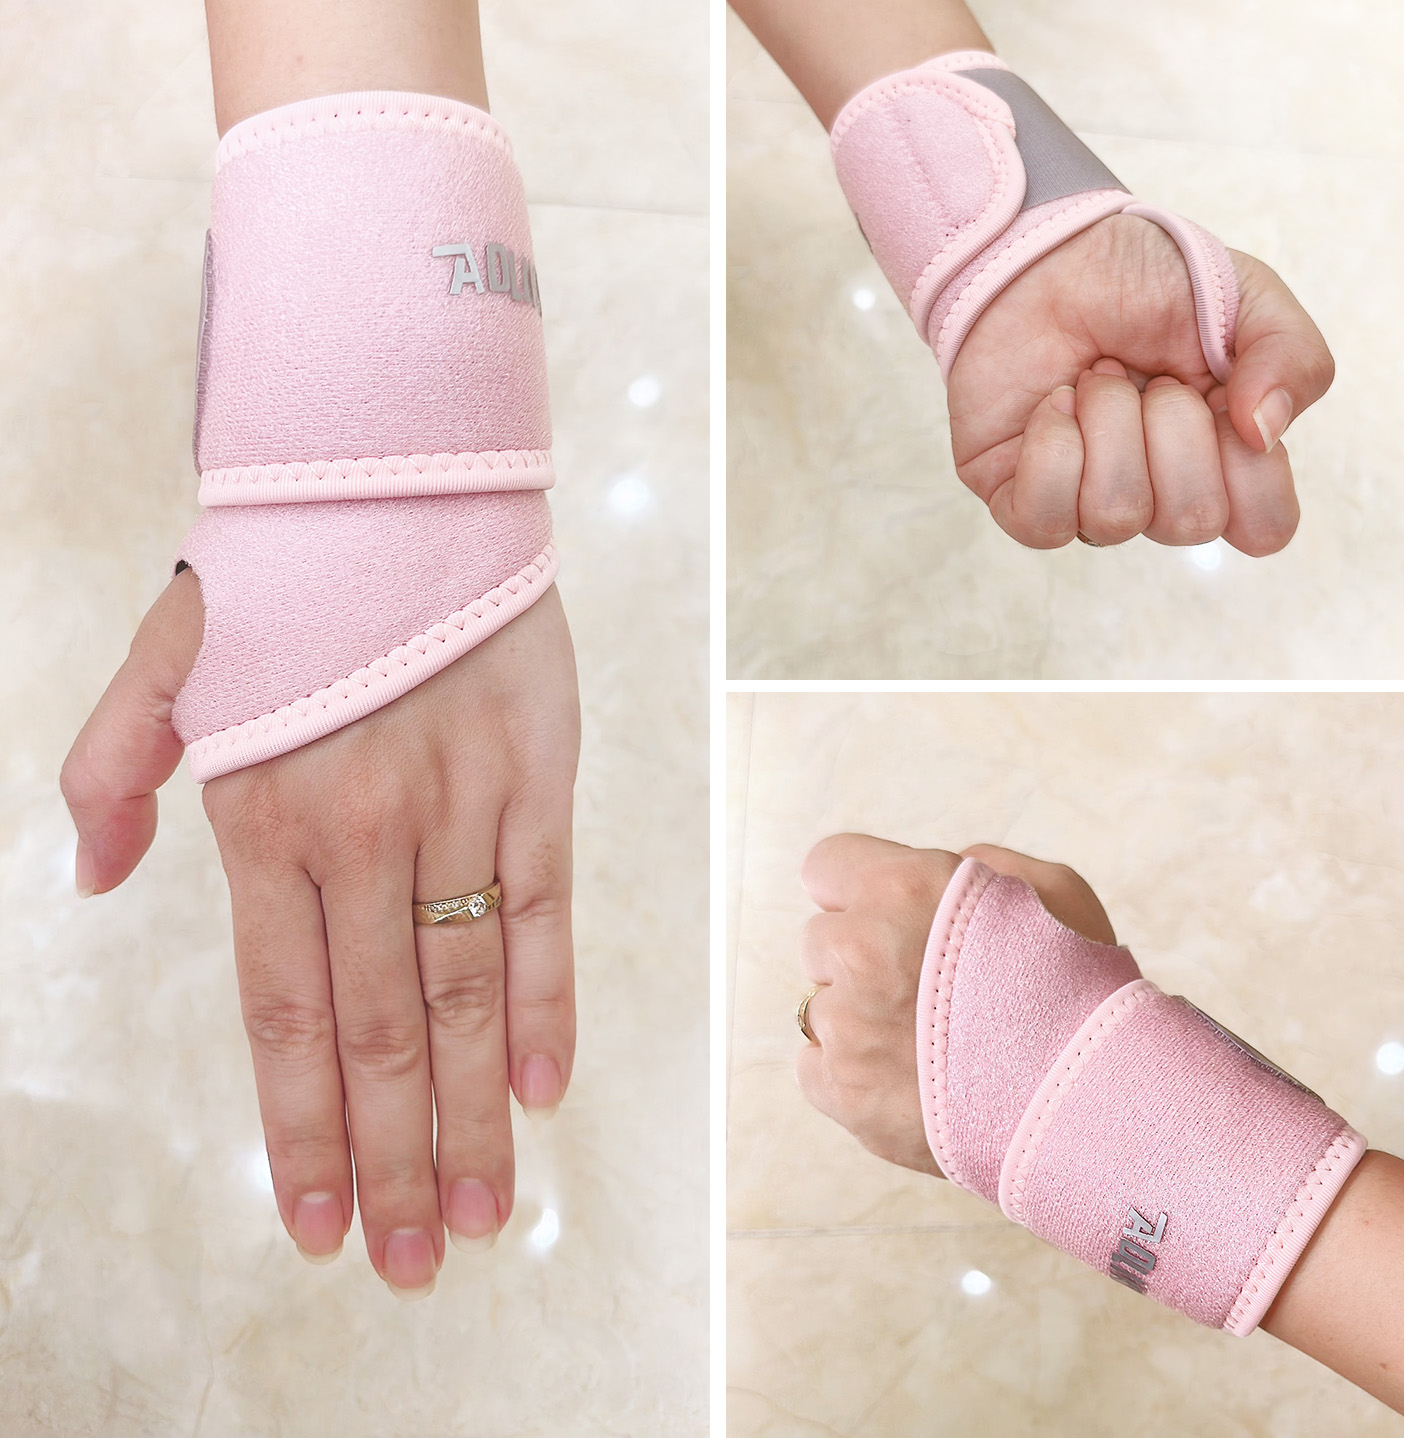 Đai Quấn Cổ Tay Xỏ Ngón Aolikes - Hỗ trợ bảo vệ cổ tay, tránh chấn thương cổ tay khi tập Gym, Yoga